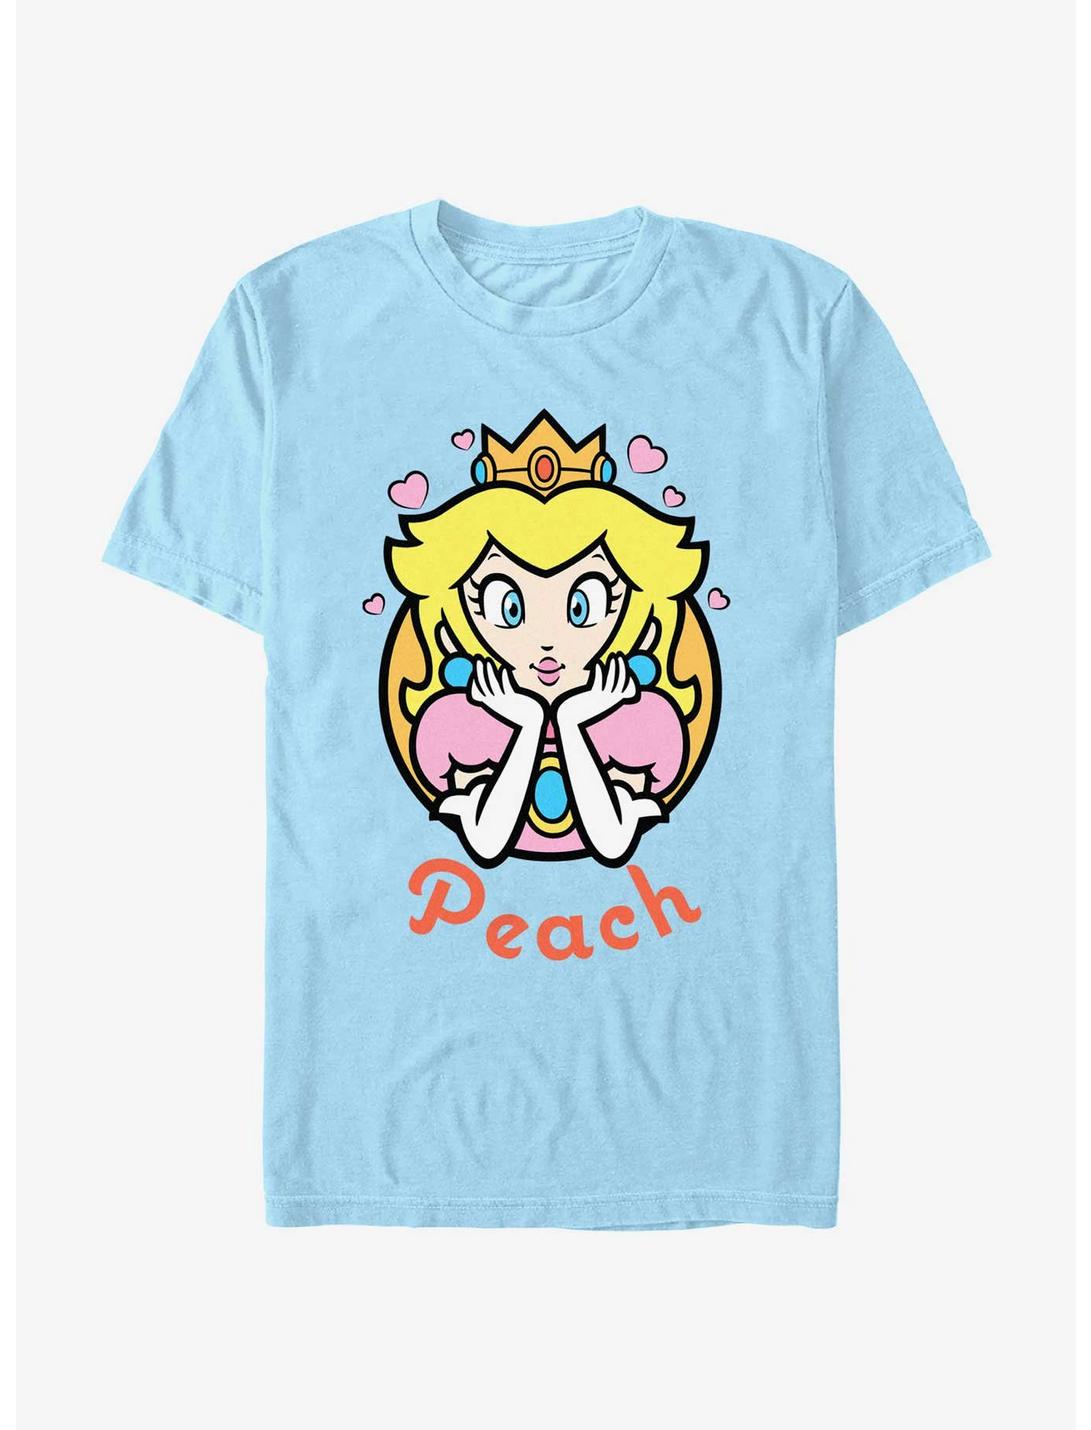 Nintendo Mario Peach Hearts T-Shirt, LT BLUE, hi-res